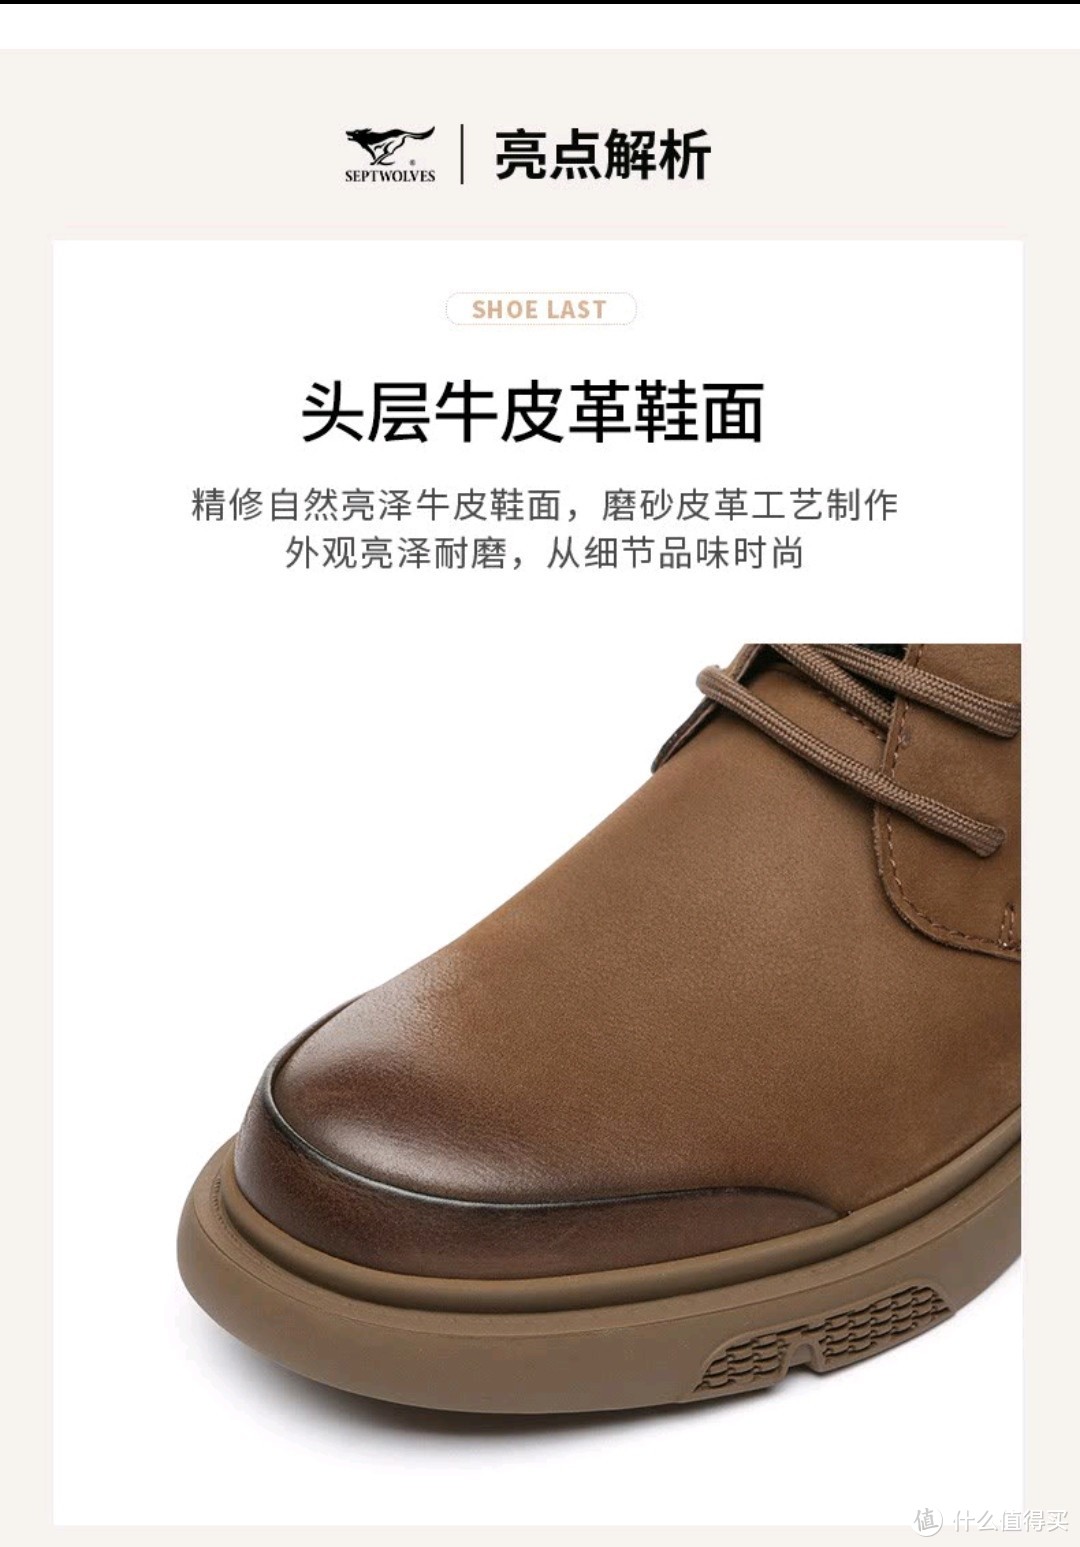 秋天就要到了，500元以下好看又实用的工装鞋工装靴分享。